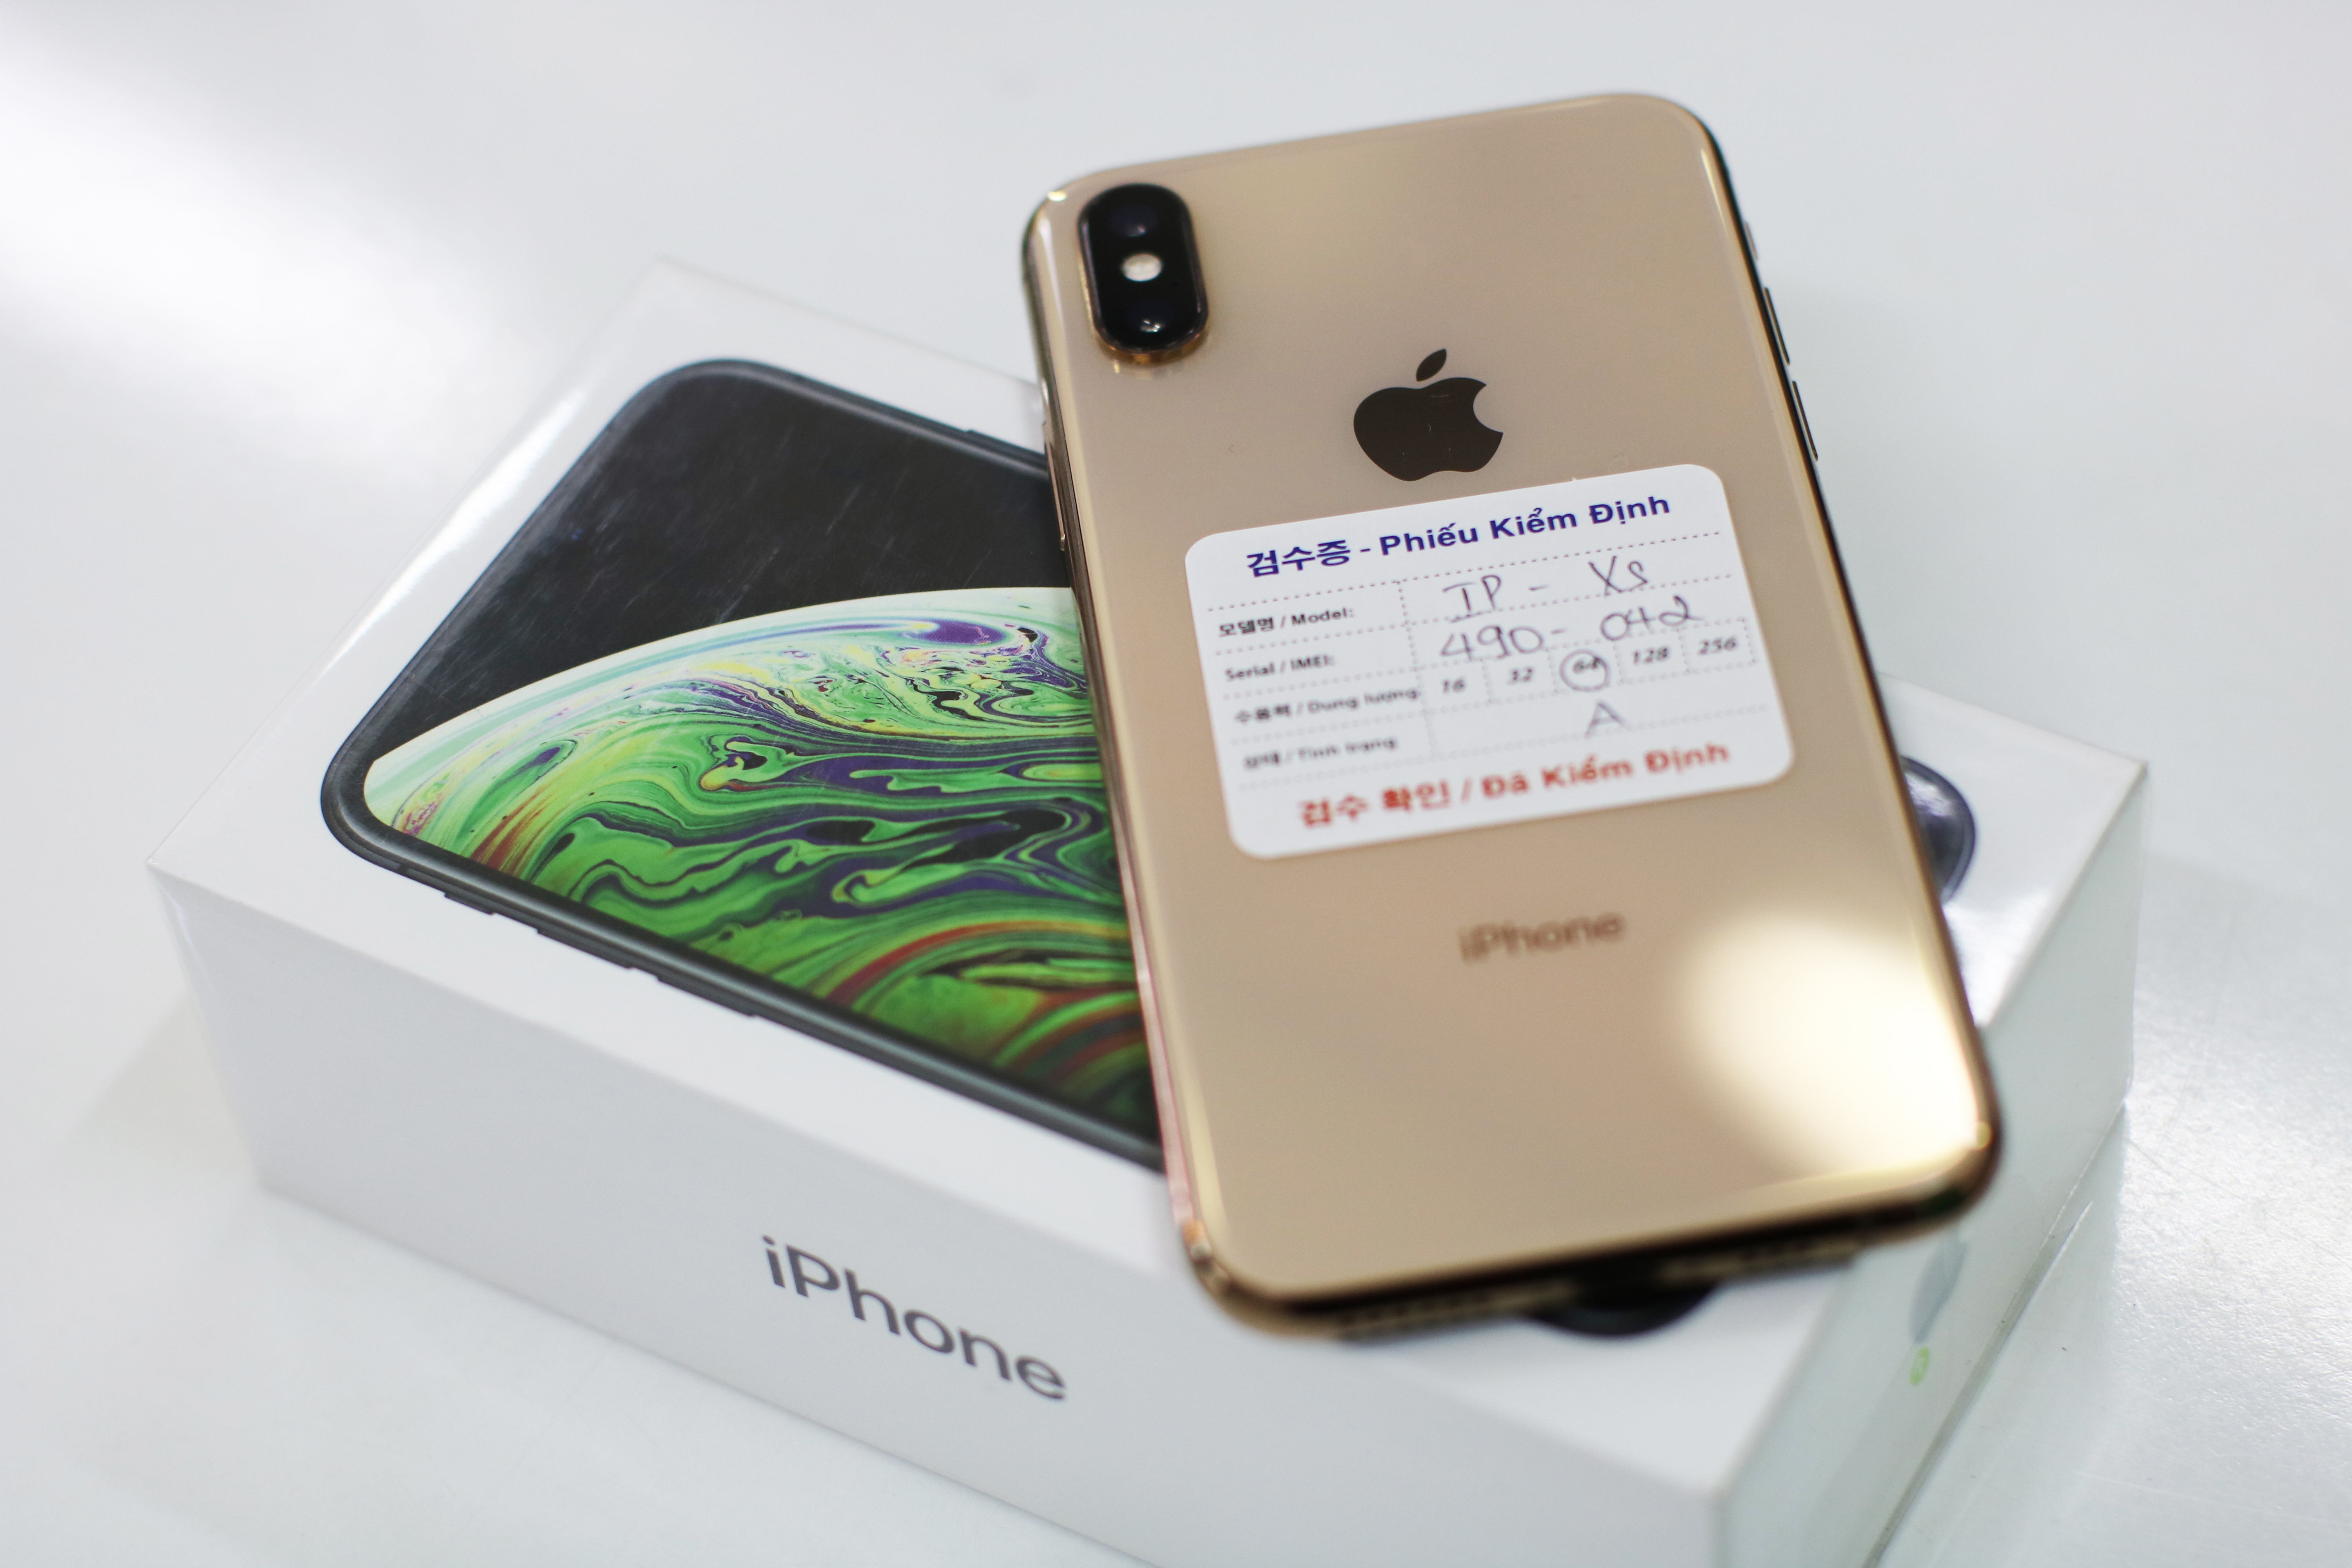 iPhone XS 64GB đánh giá là chiếc điện thoại iphone số 1 Hải Phòng